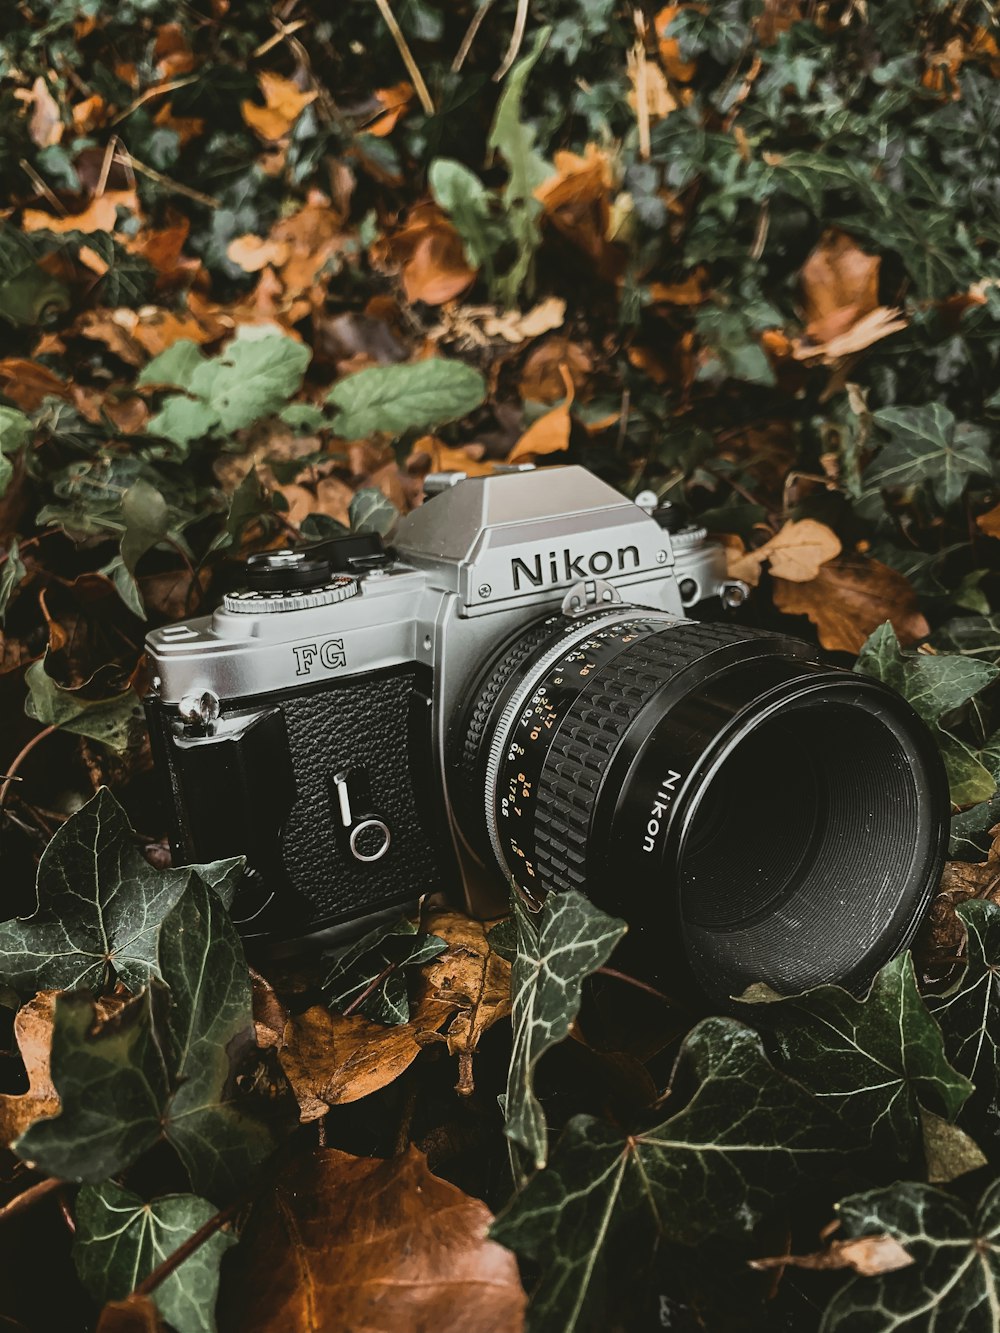 grey and black Nikon SLR camera